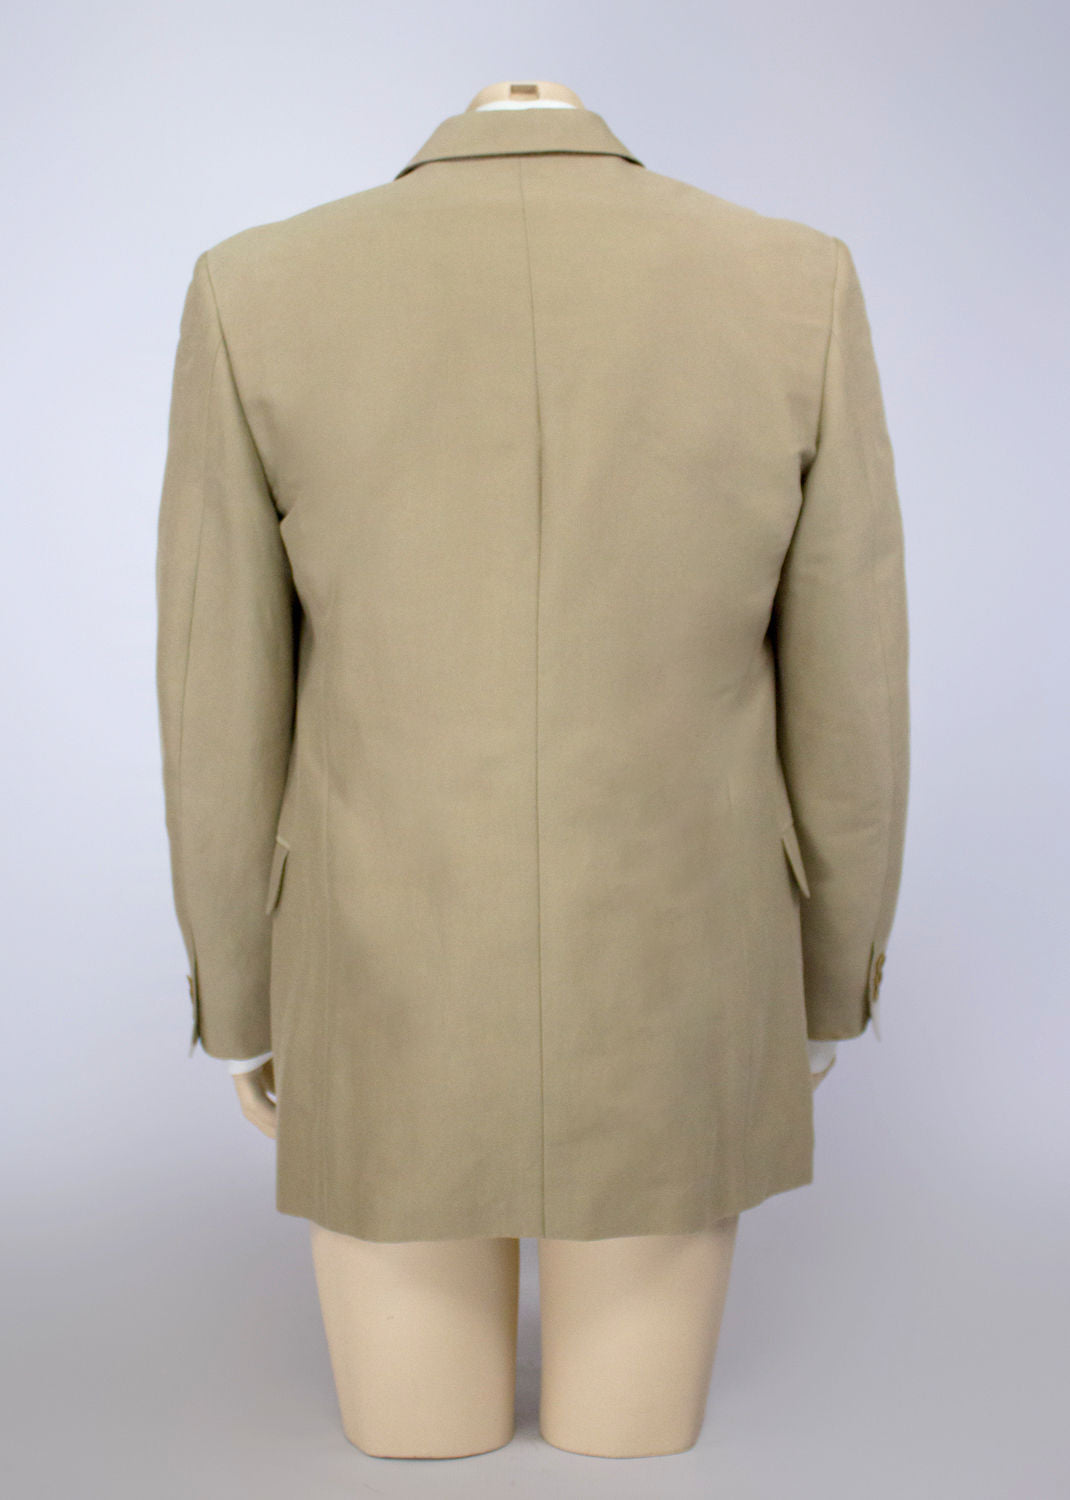 VERSACE VERSUS Beige 3btn Silk blend Blazer Jacket SIZE US 38 R/EU 48 R - secondfirst